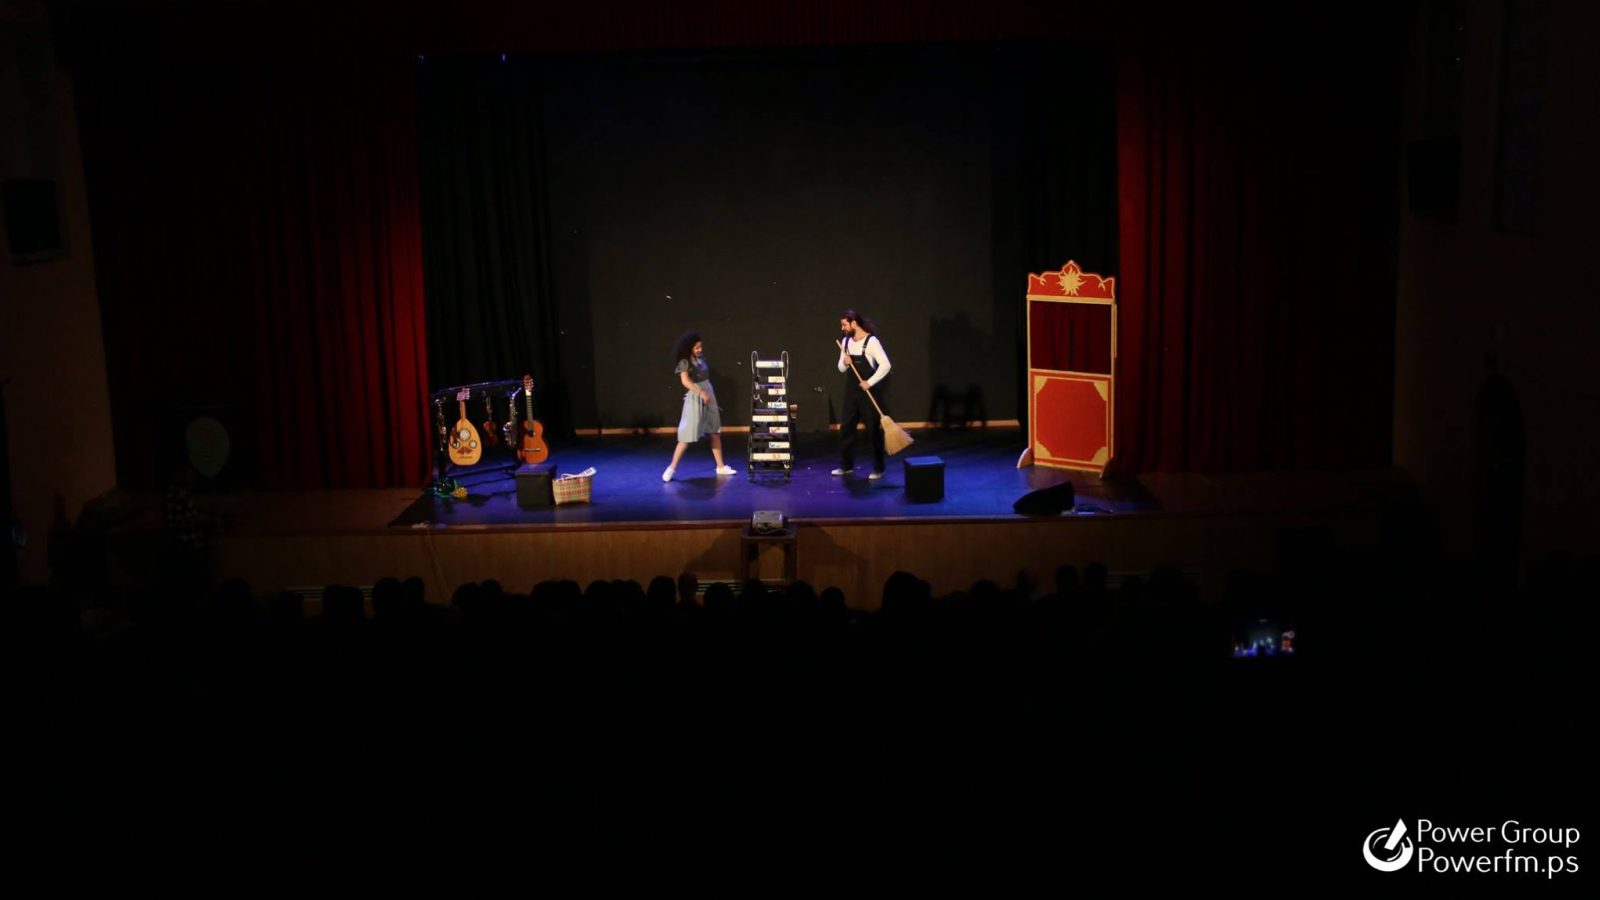 مهرجان فلسطين الدولي لمسرح الطفل والشباب نظم بالشراكة مع الاتحاد الأوروبي